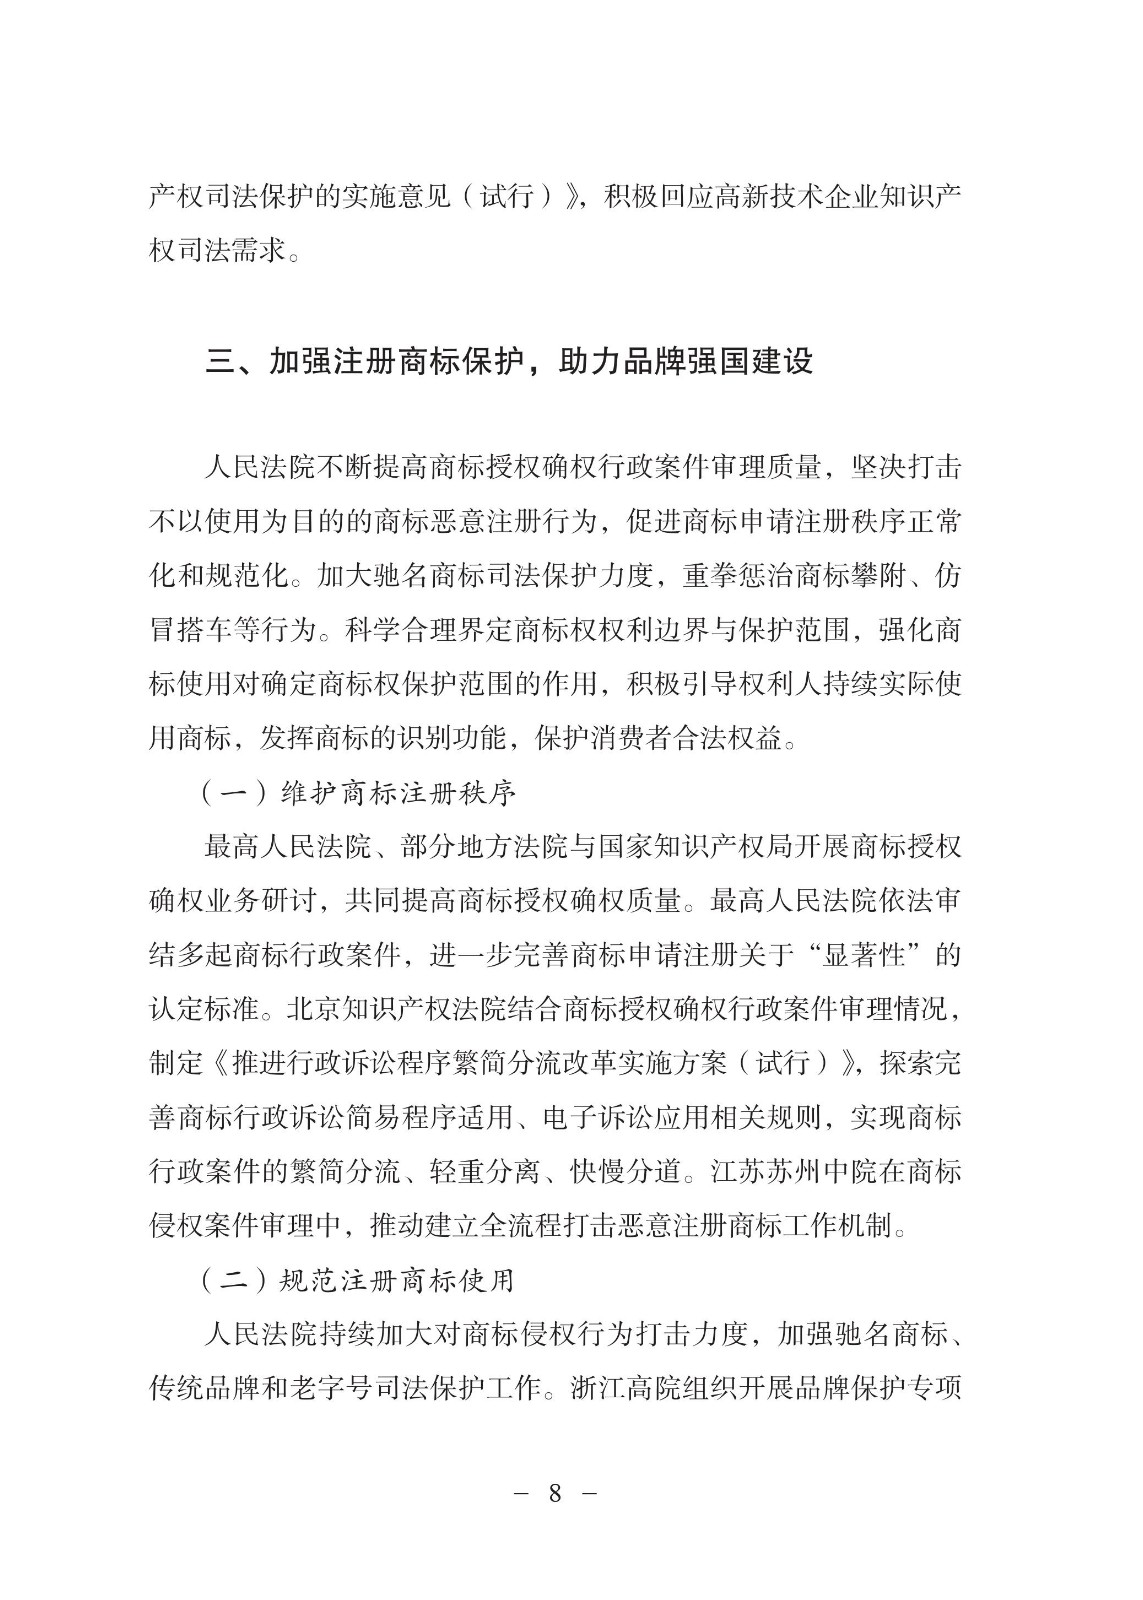 中国法院知识产权司法保护状况（2021年）全文发布！